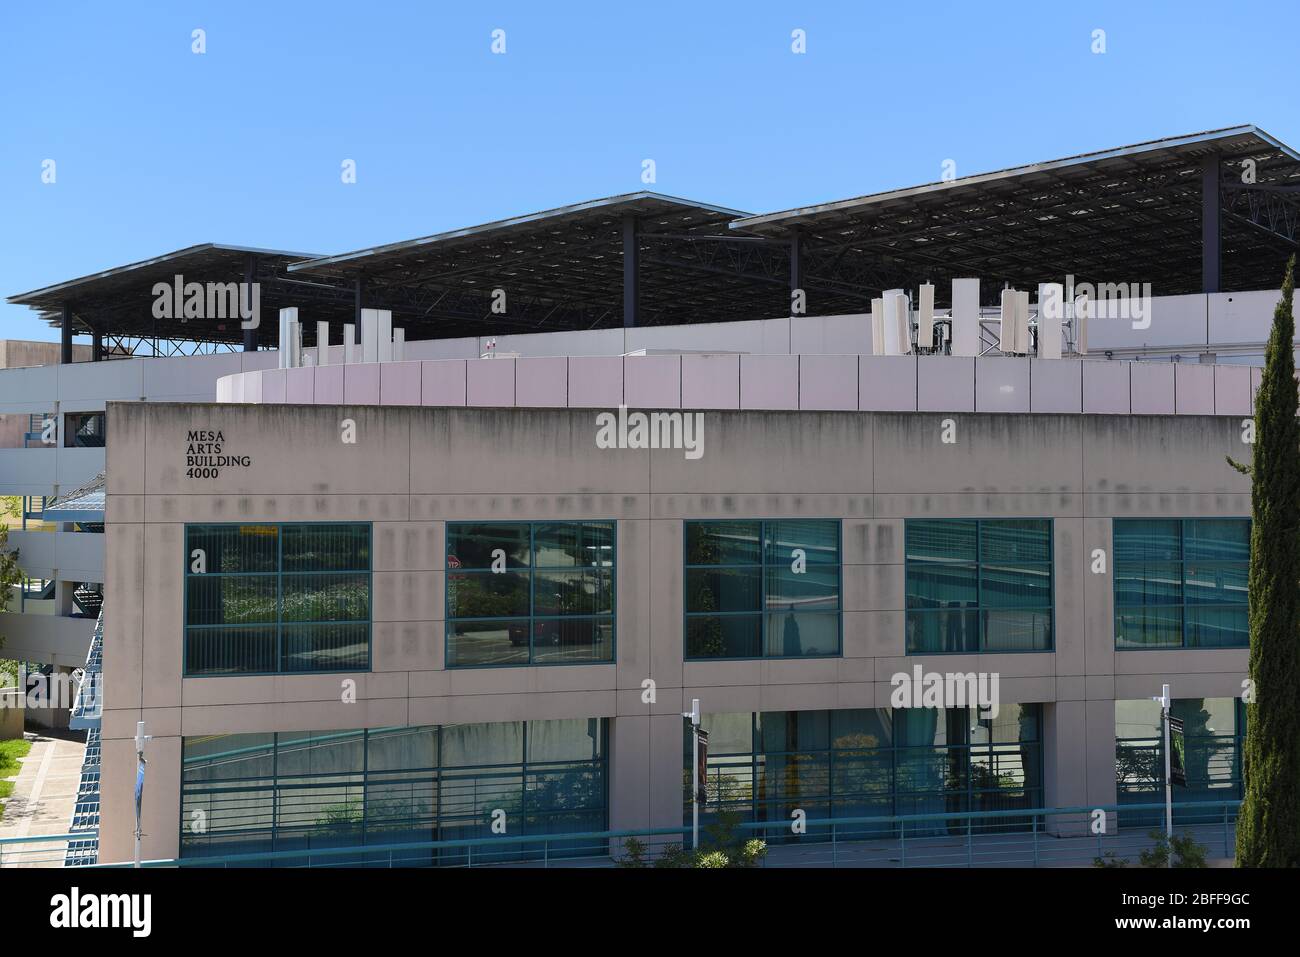 IRVINE, CALIFORNIE - 16 AVRIL 2020: Mesa Art Building et parking garage avec panneaux solaires sur le campus de l'Université de Californie Irvine, U. Banque D'Images